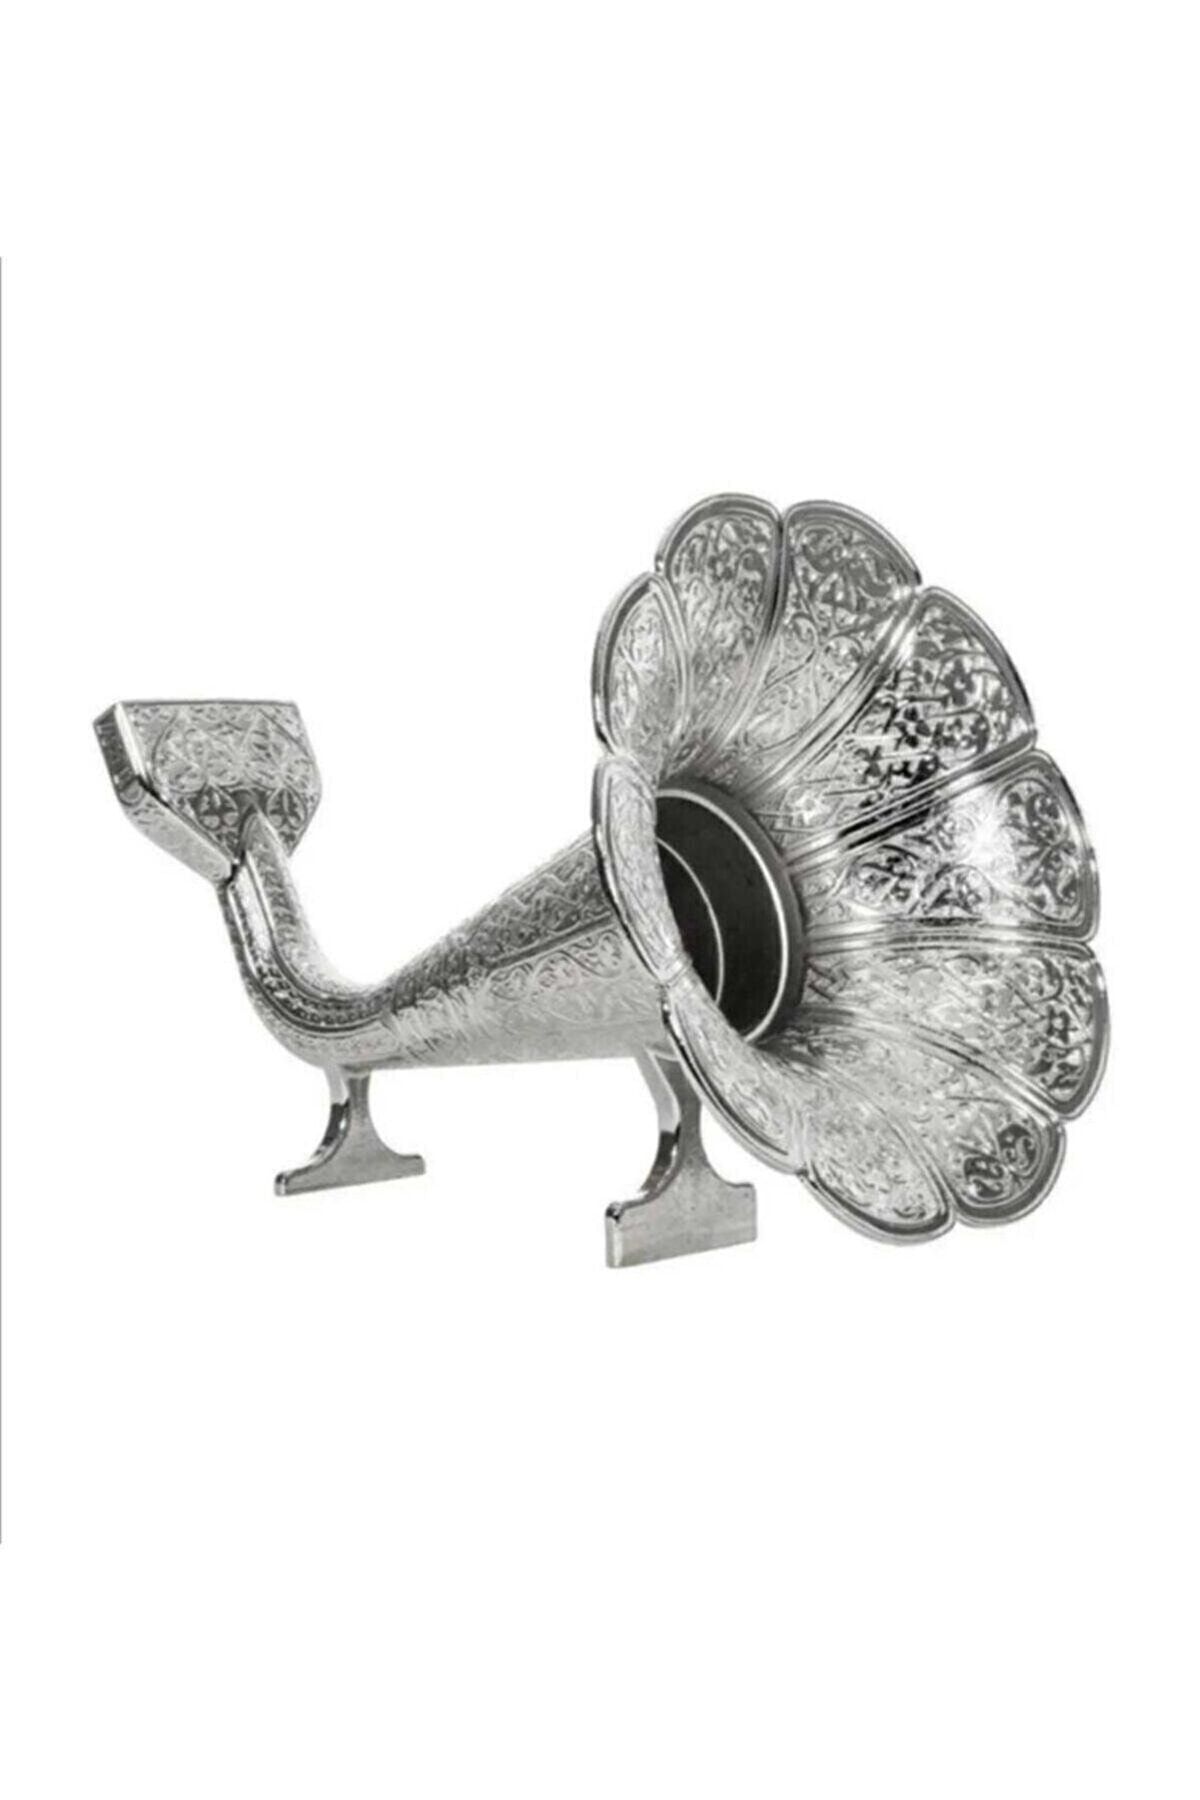 Kelepir Fırsatlar Otantik Parlak Gümüş Osmanlı Stili Gramofoni Cep Telefenlarına Uygun Ses Yükseltici